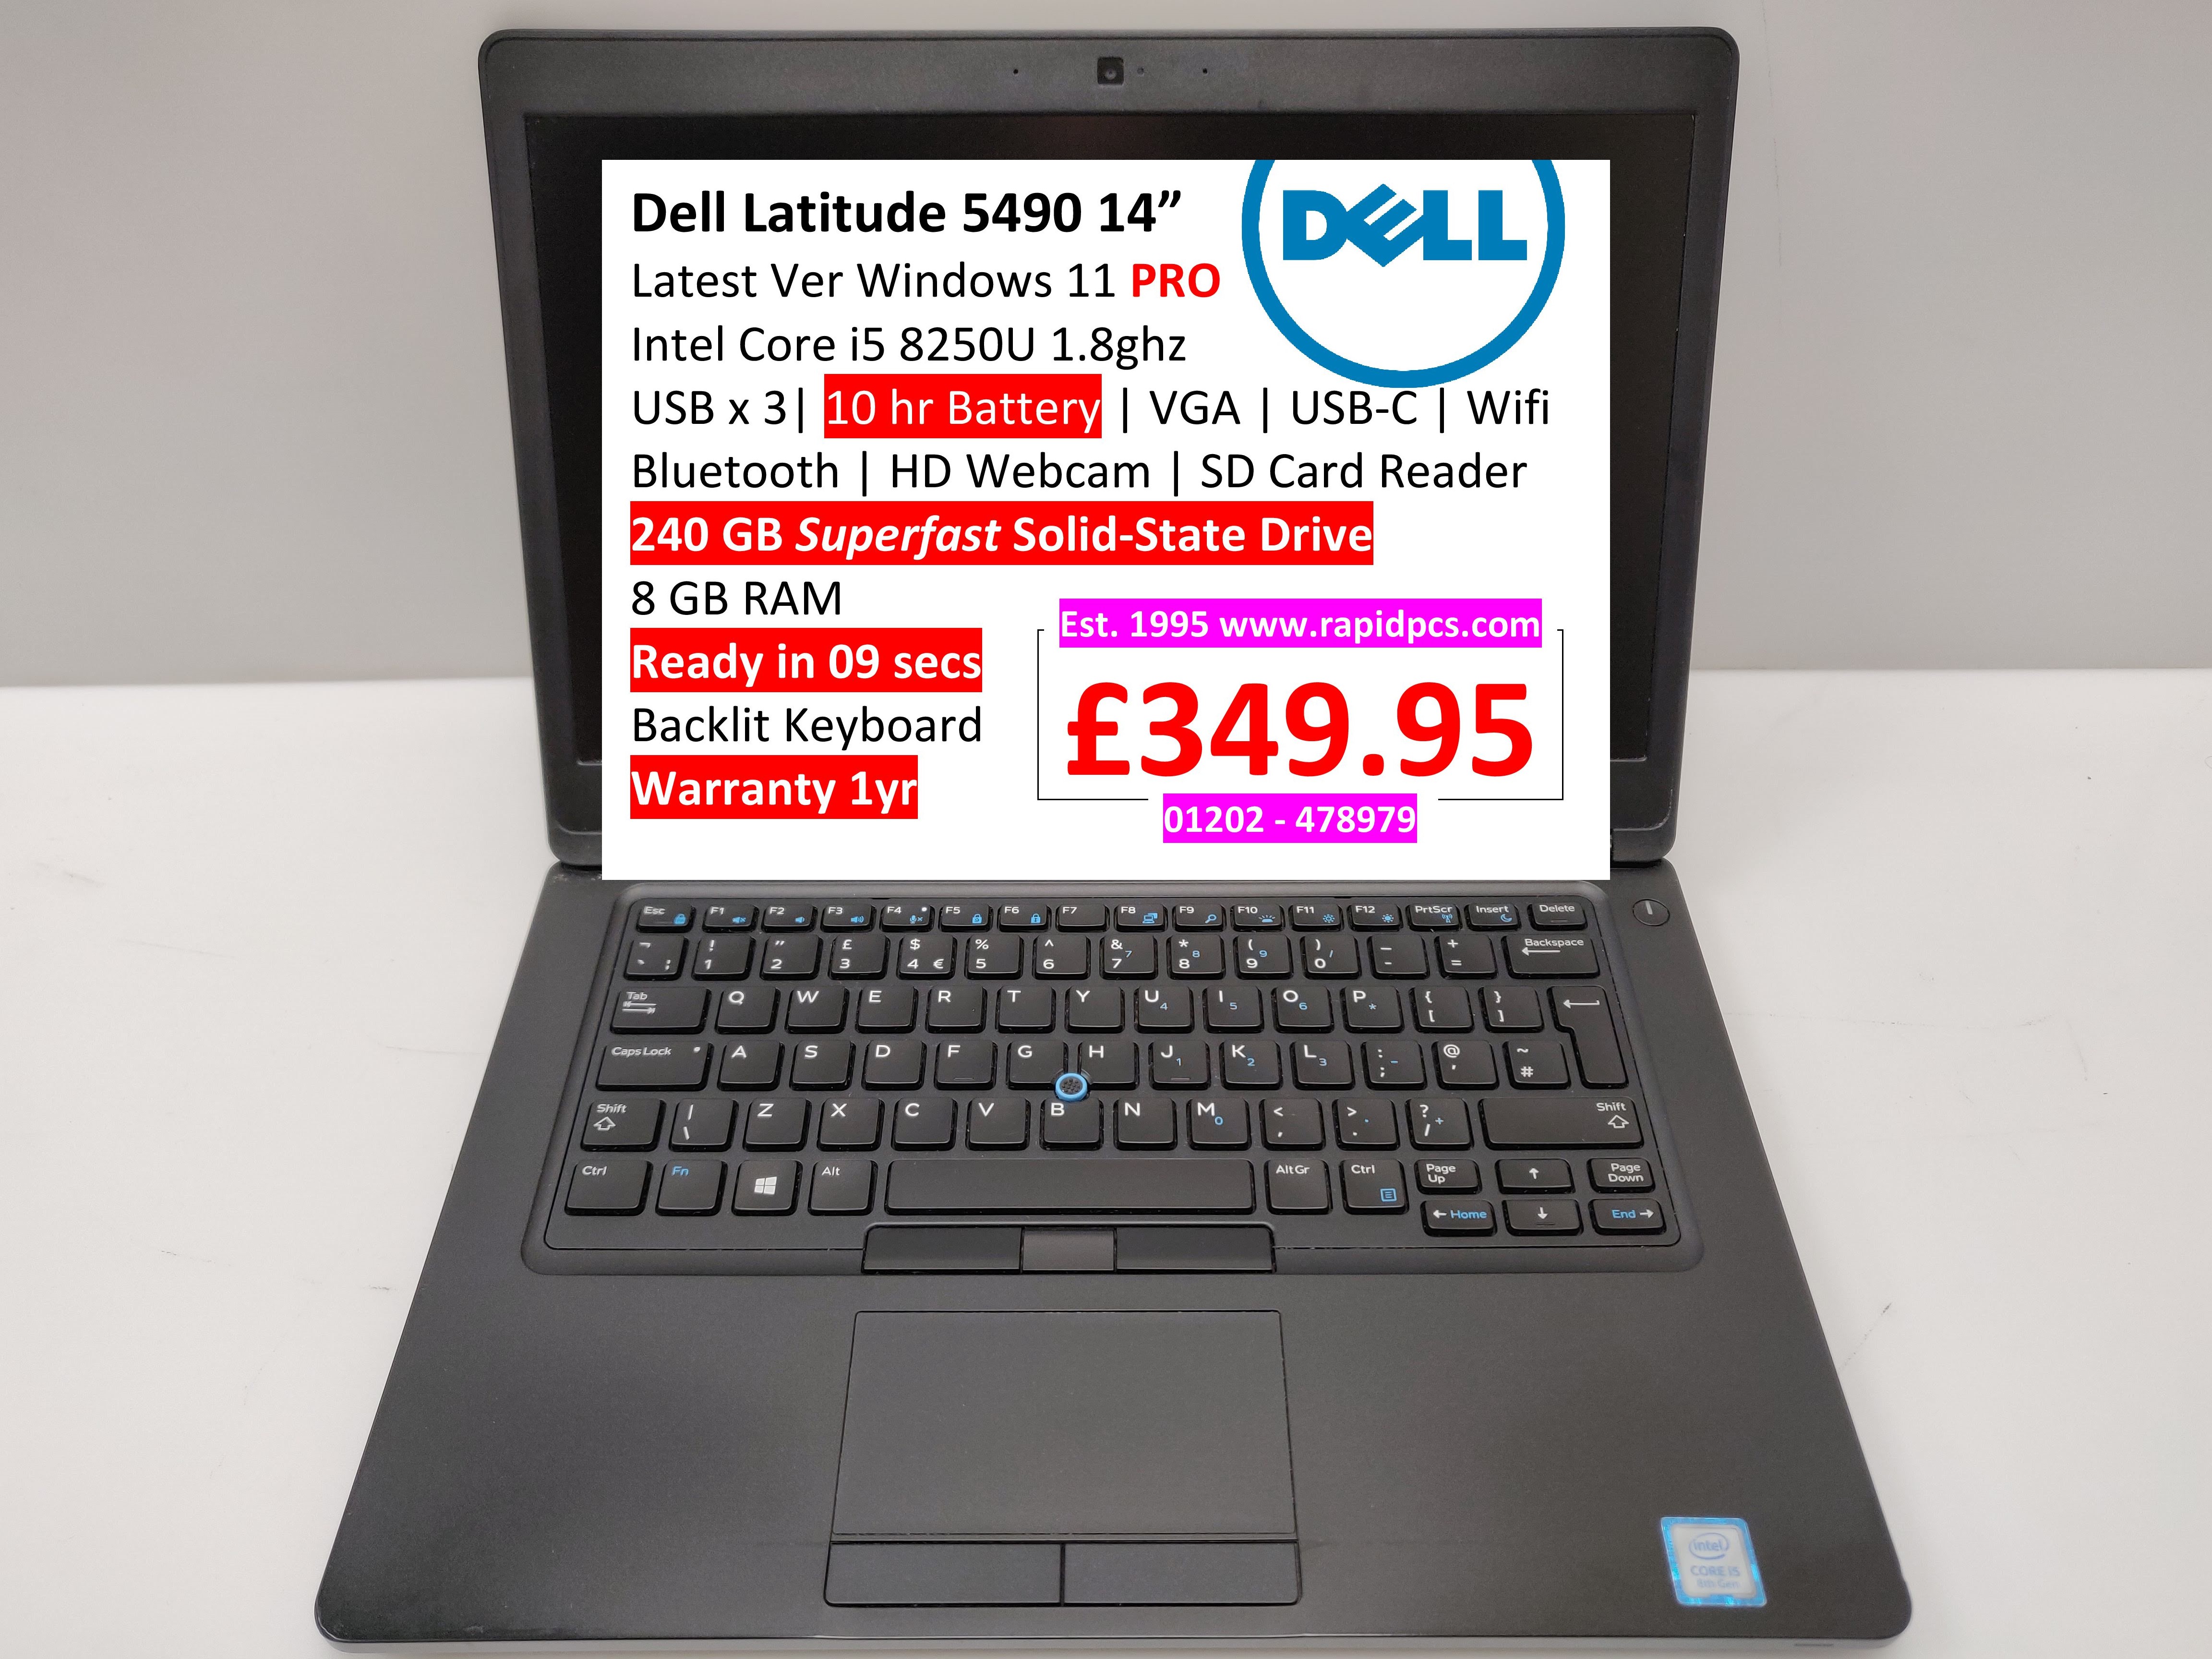 Dell Latitude Win   ”   Rapid PCs